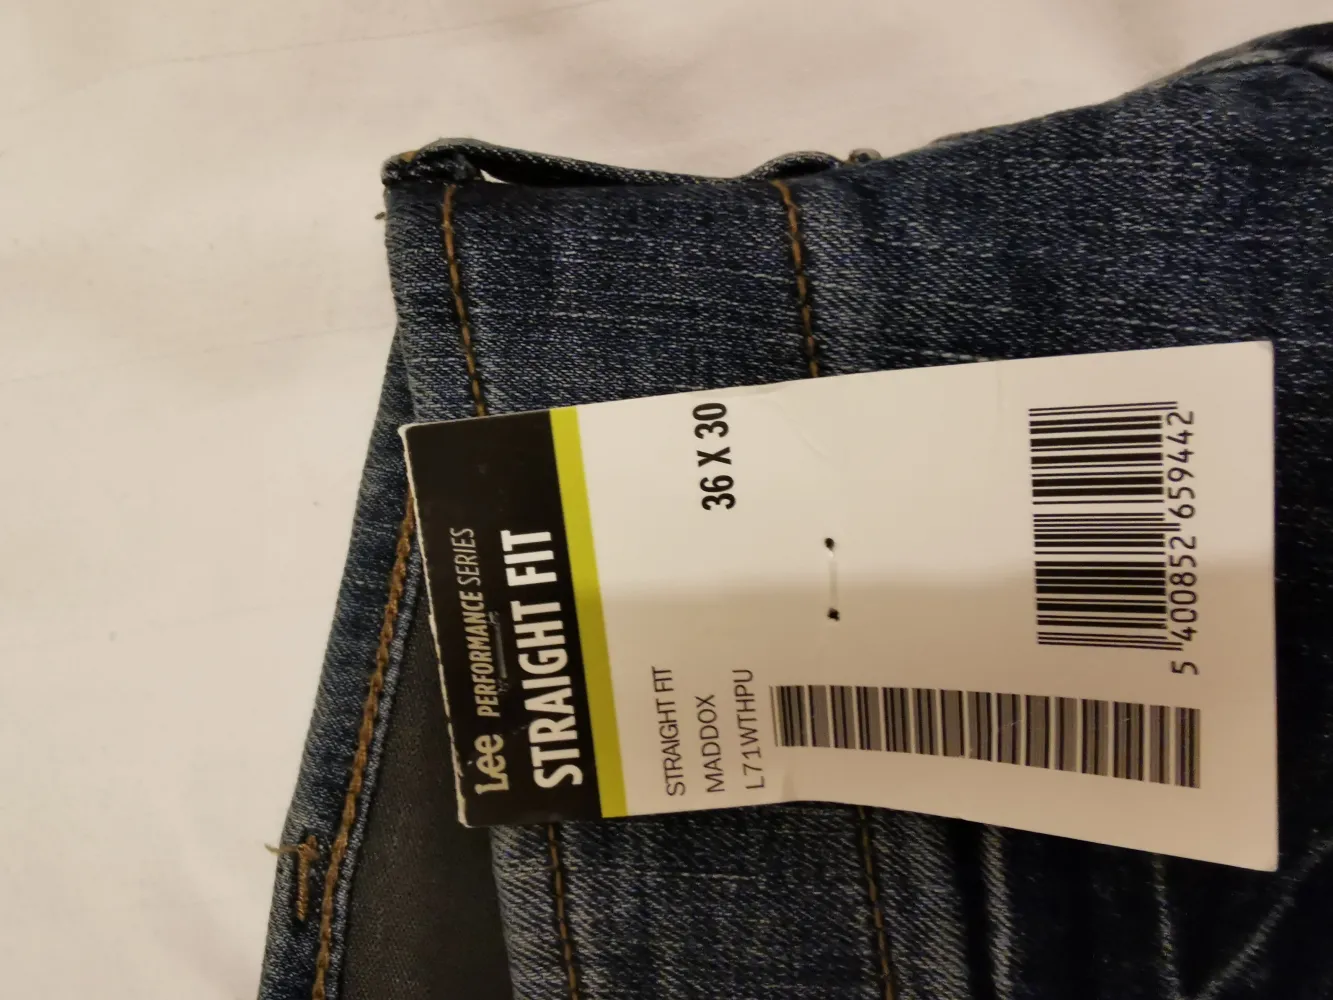 Lee Jeans: Reviews, Complaints, Customer Claims | ComplaintsBoard